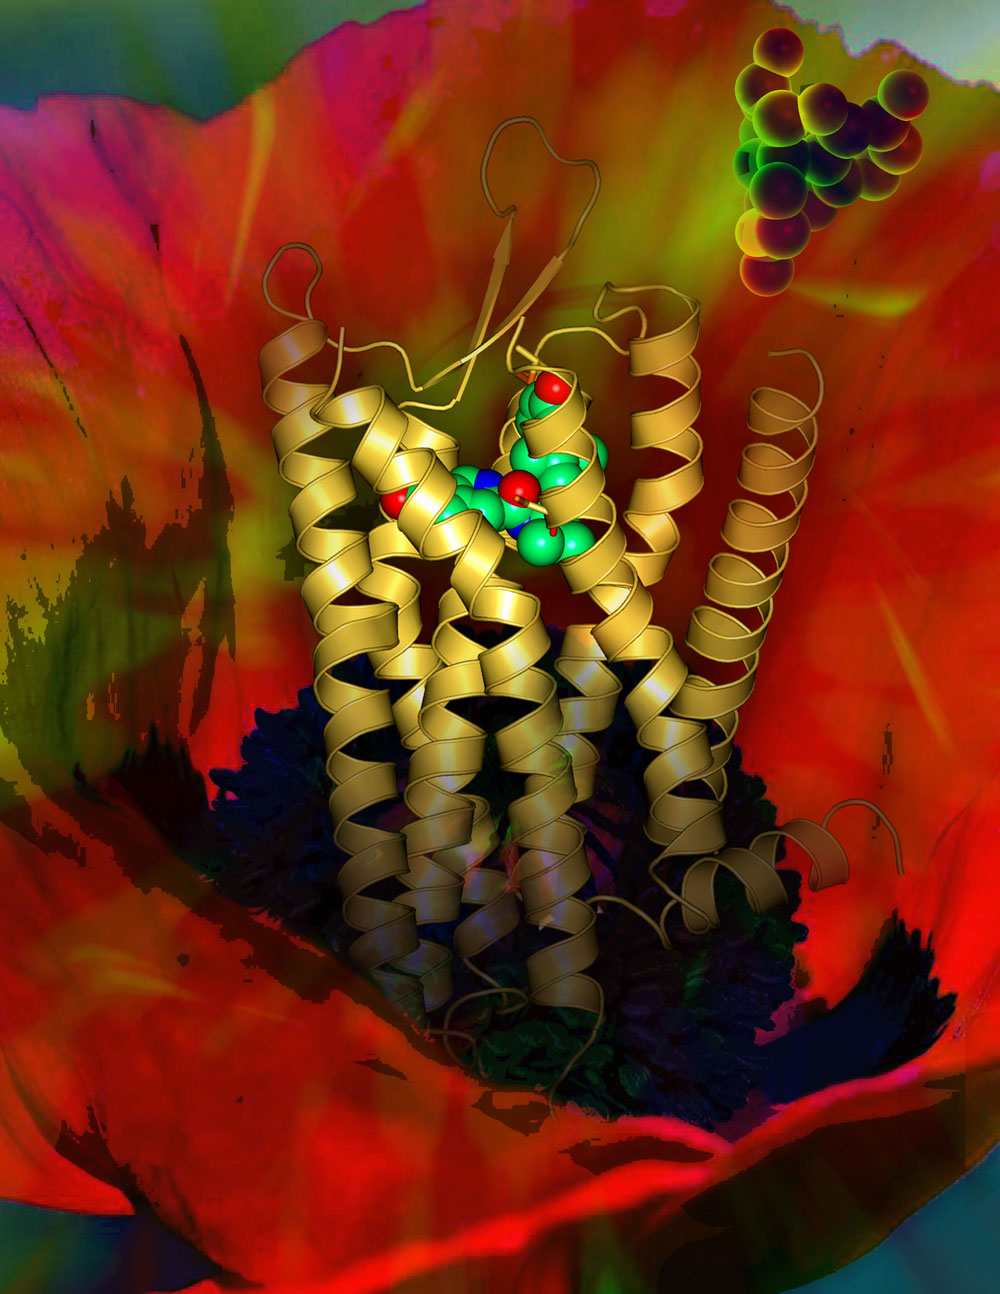 κオピオイド受容体と古典的アゴニストであるモルヒネ分子。背景はケシの花。